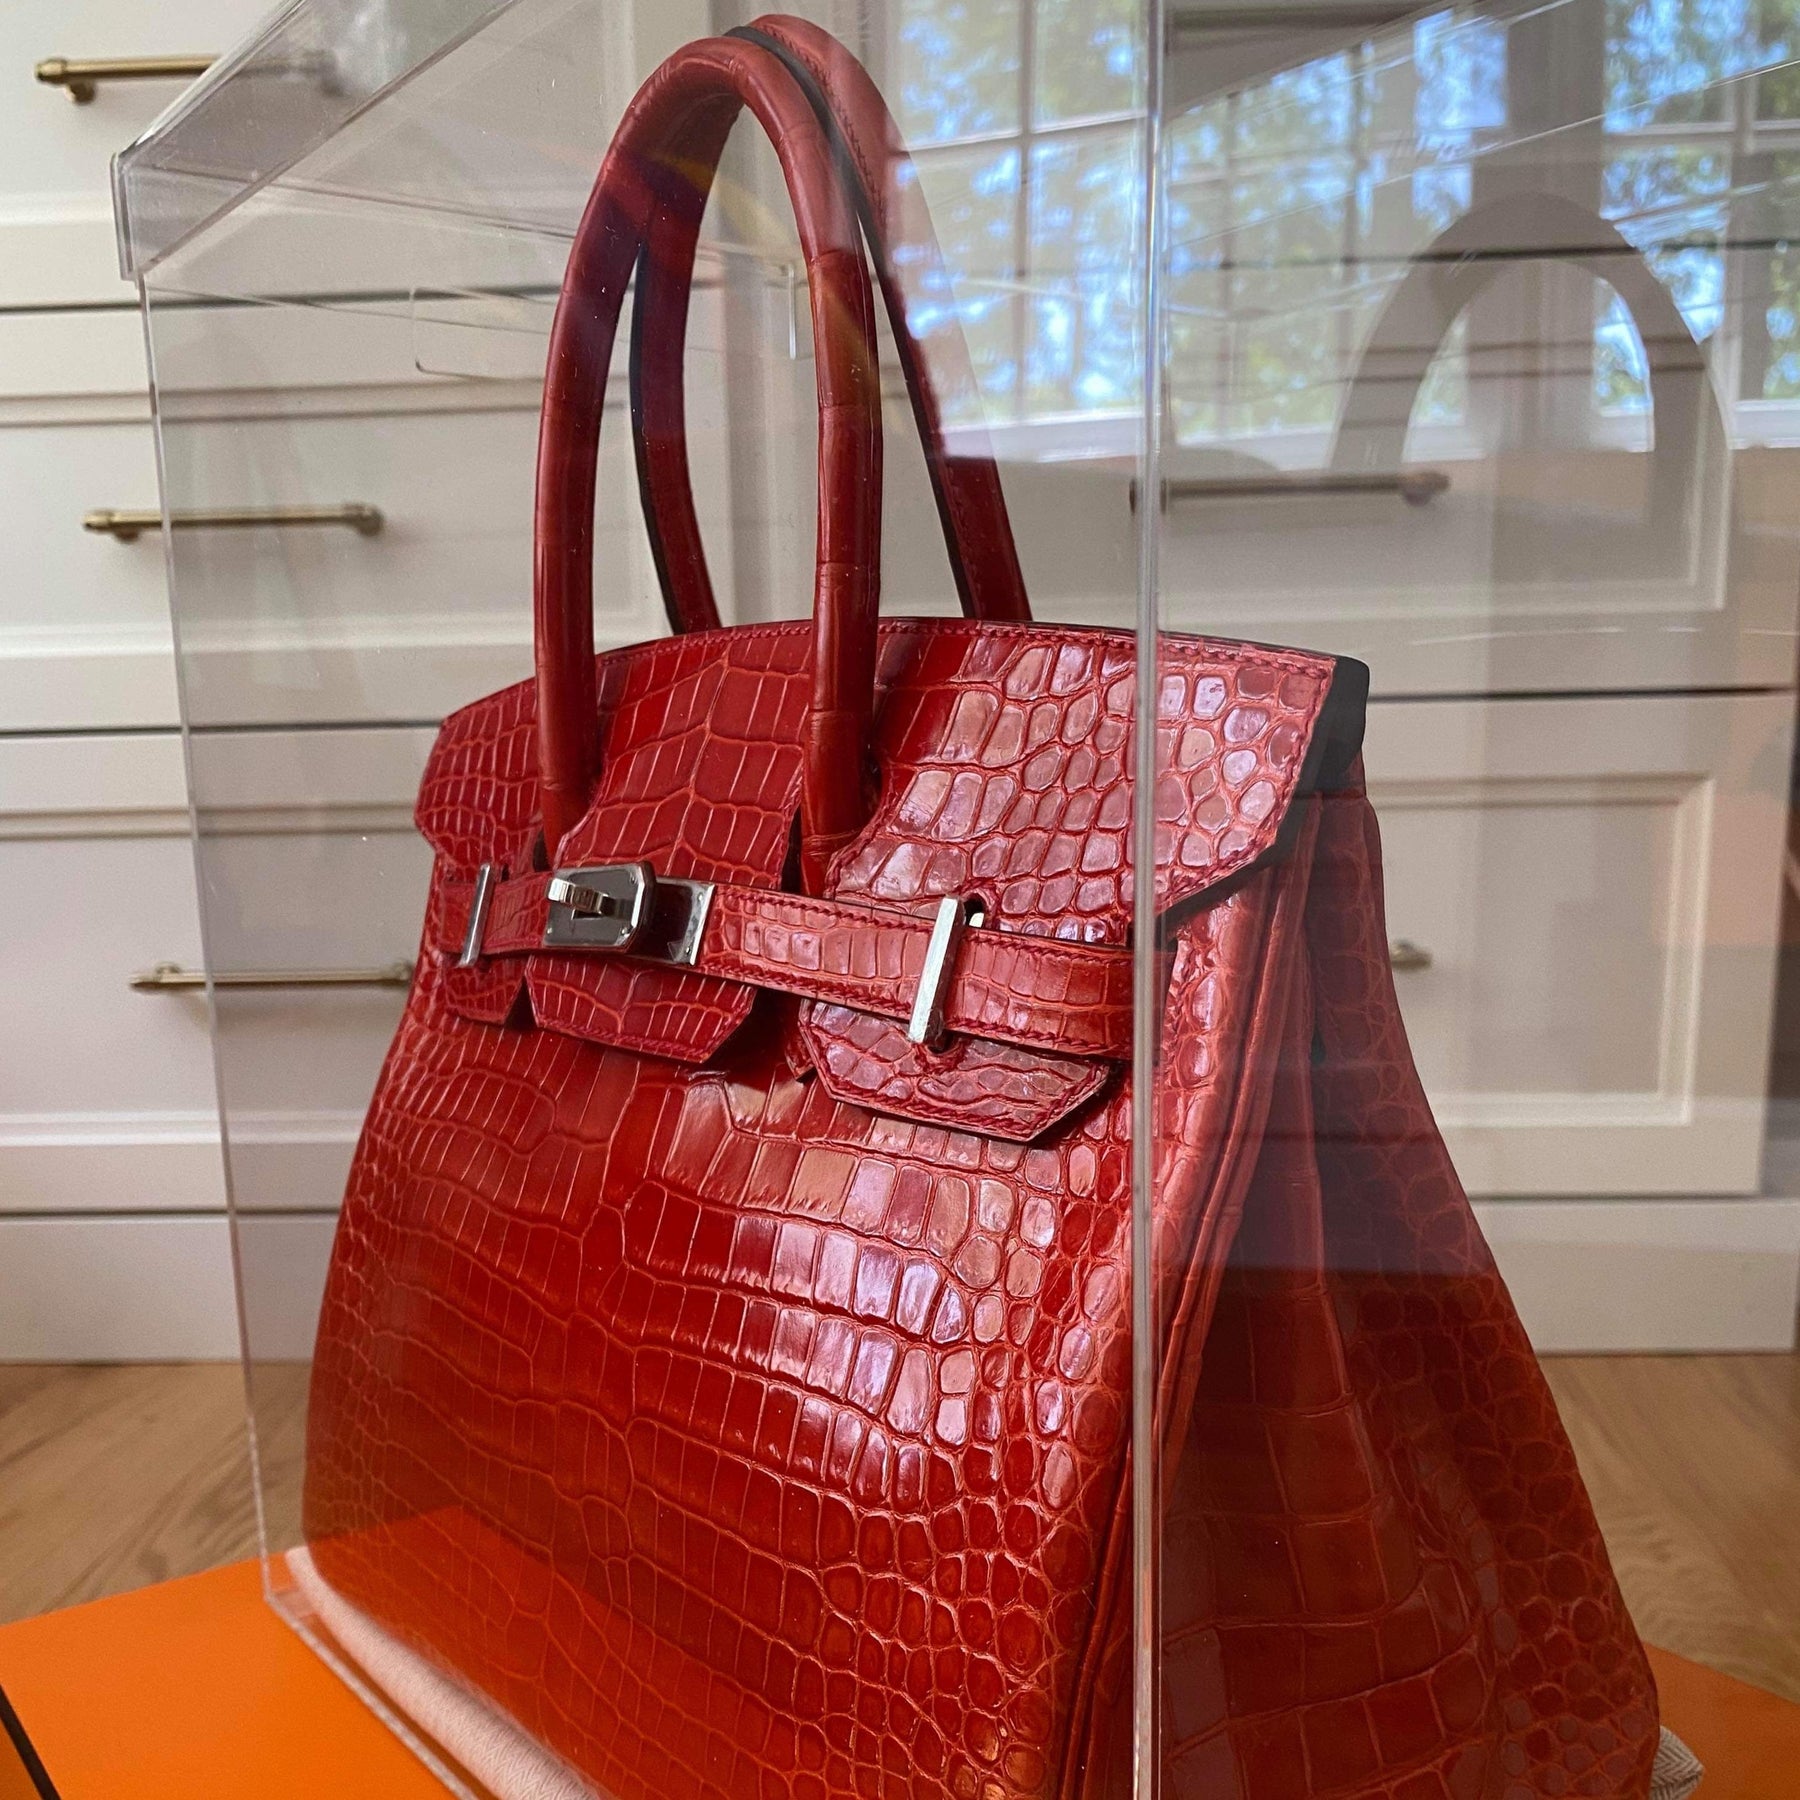 Designer Handbag Storage Case Made for Hermes Birkin – Luxury Bag